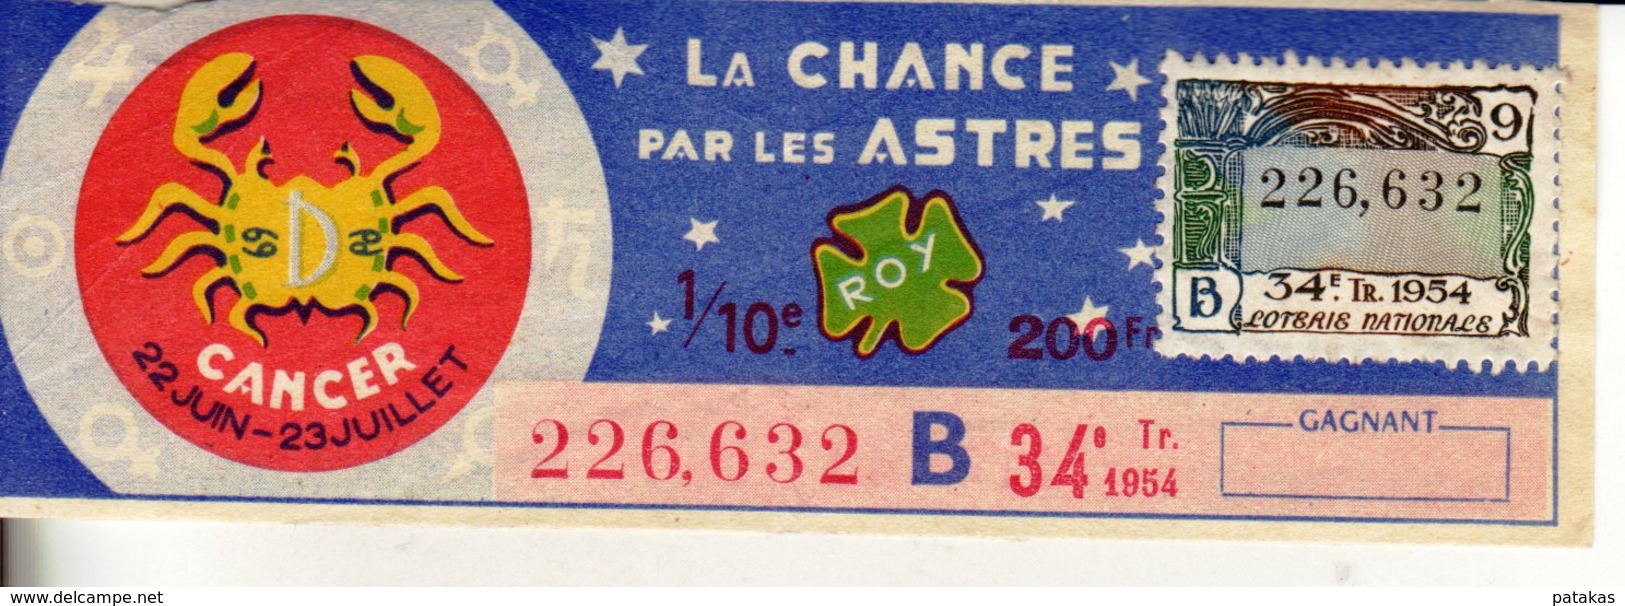 France - 425 - La Chance Par Les Astres Cancer - 34 ème Tranche 1954 - Lottery Tickets